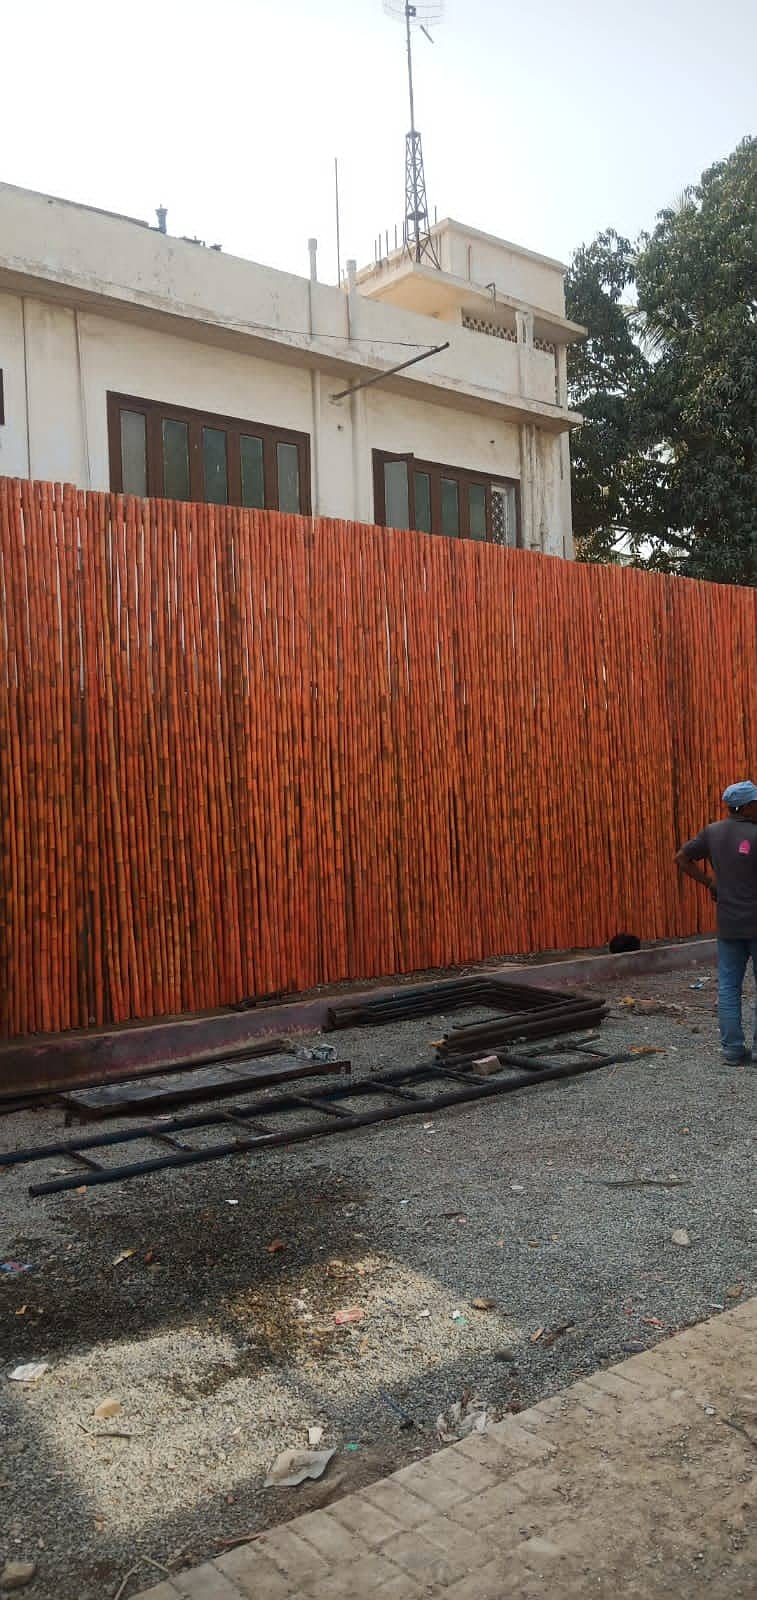 bamboo Shade Jaffri Wall Works Best Baans Work Bamboo Pent House 14